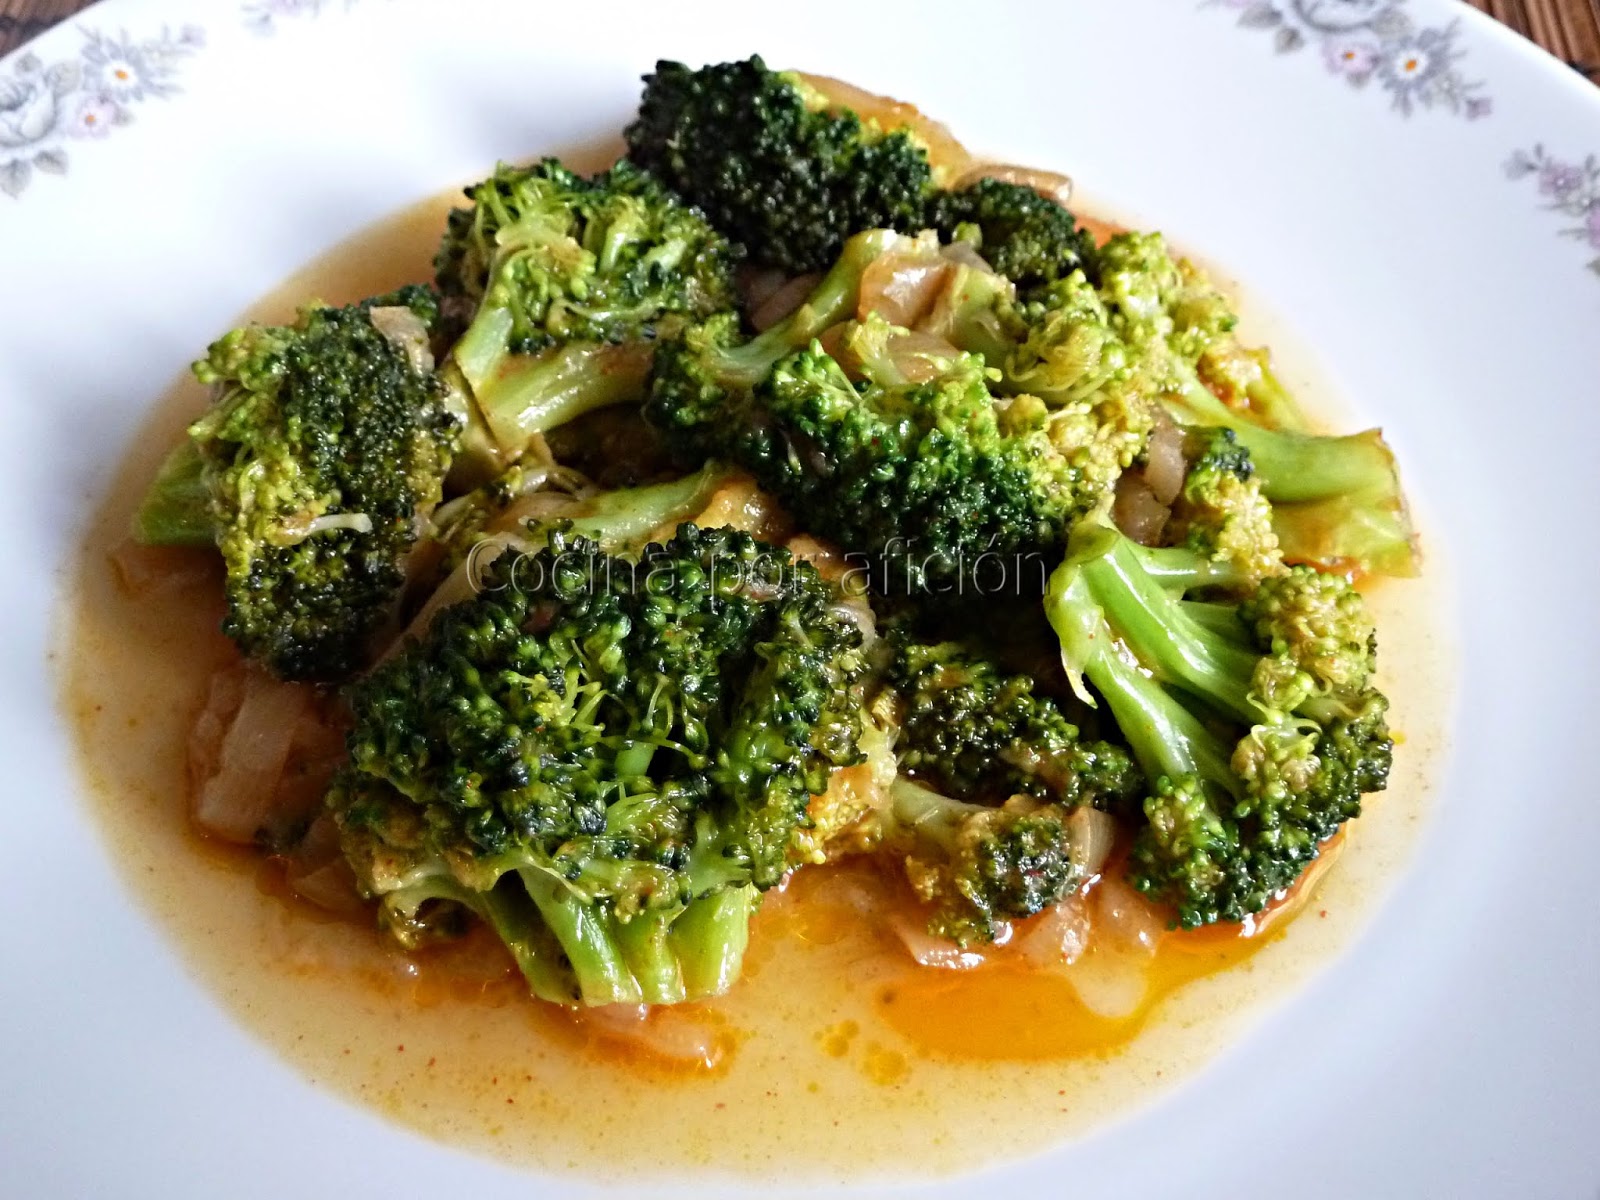 Cocina por afición: Brócoli en escabeche